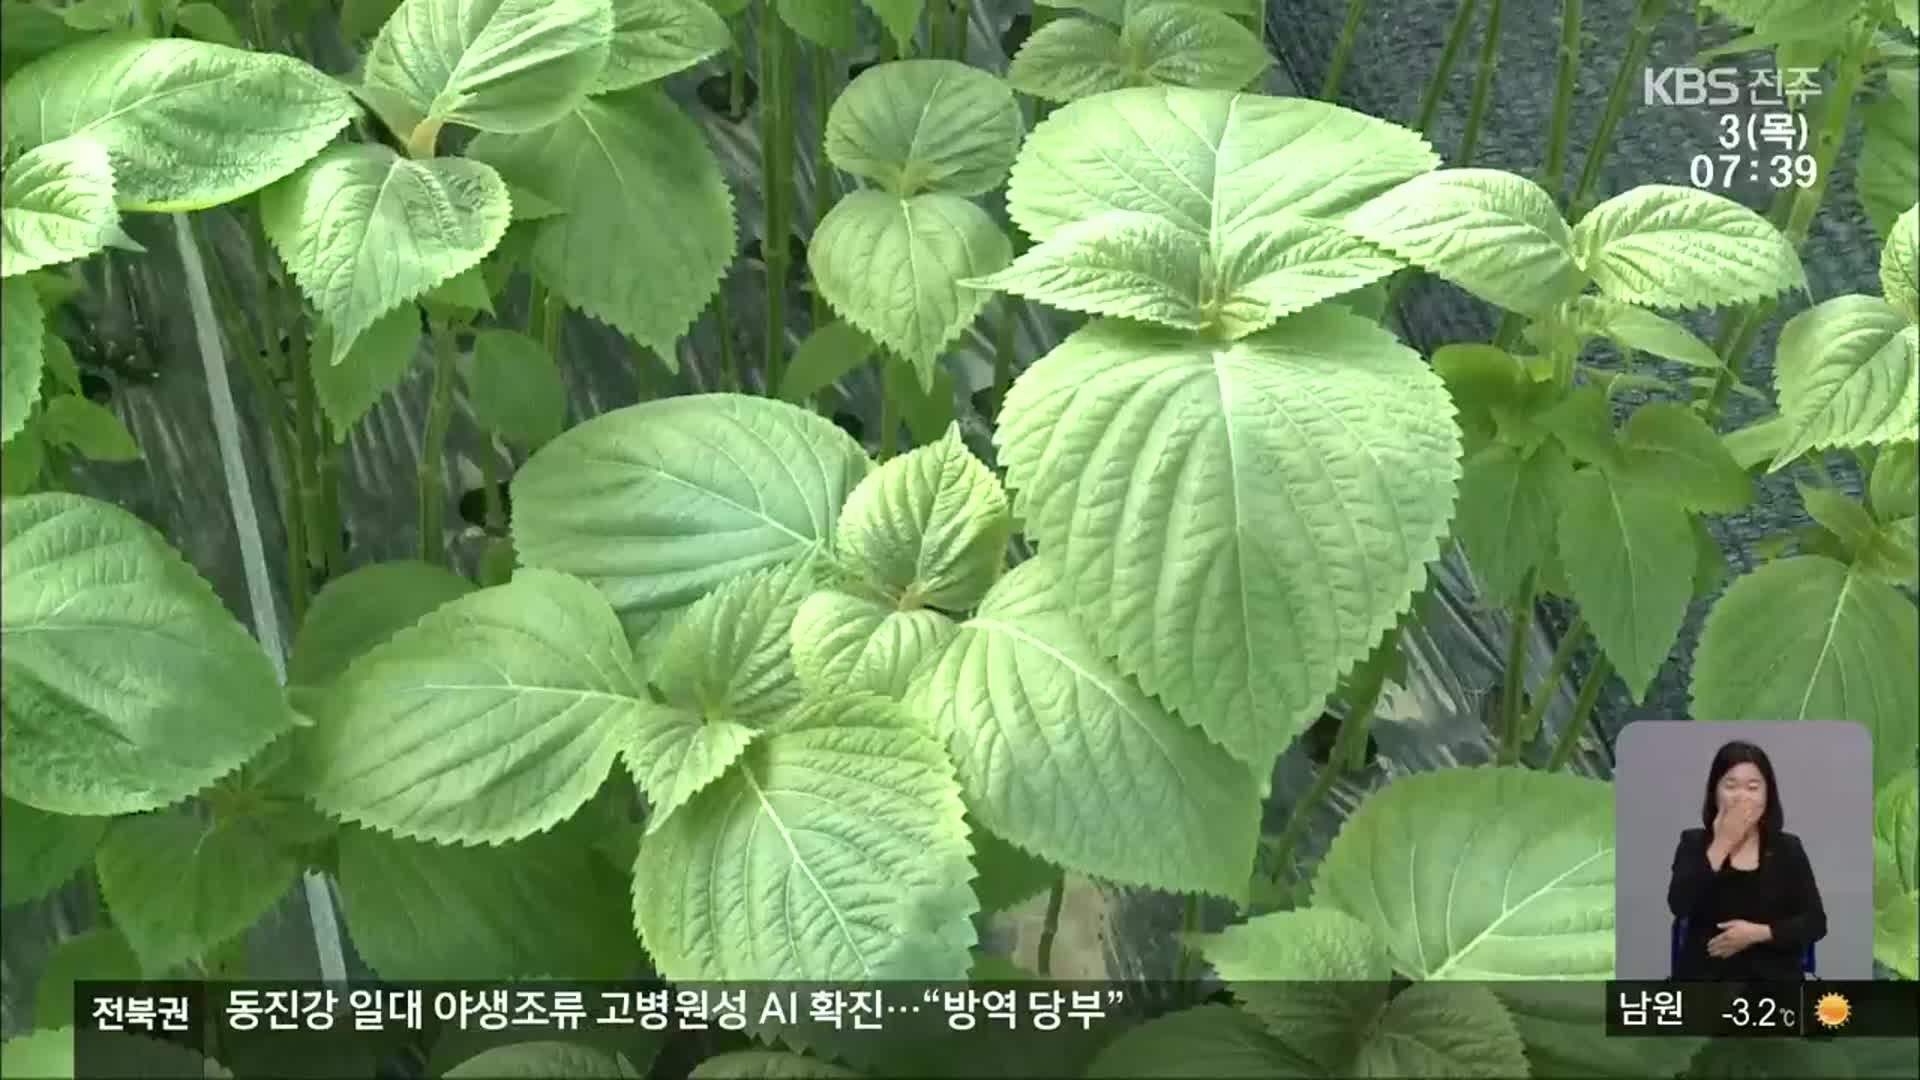 [전북의 창] 겨울철 깻잎 수확…농가 소득 작목 인기